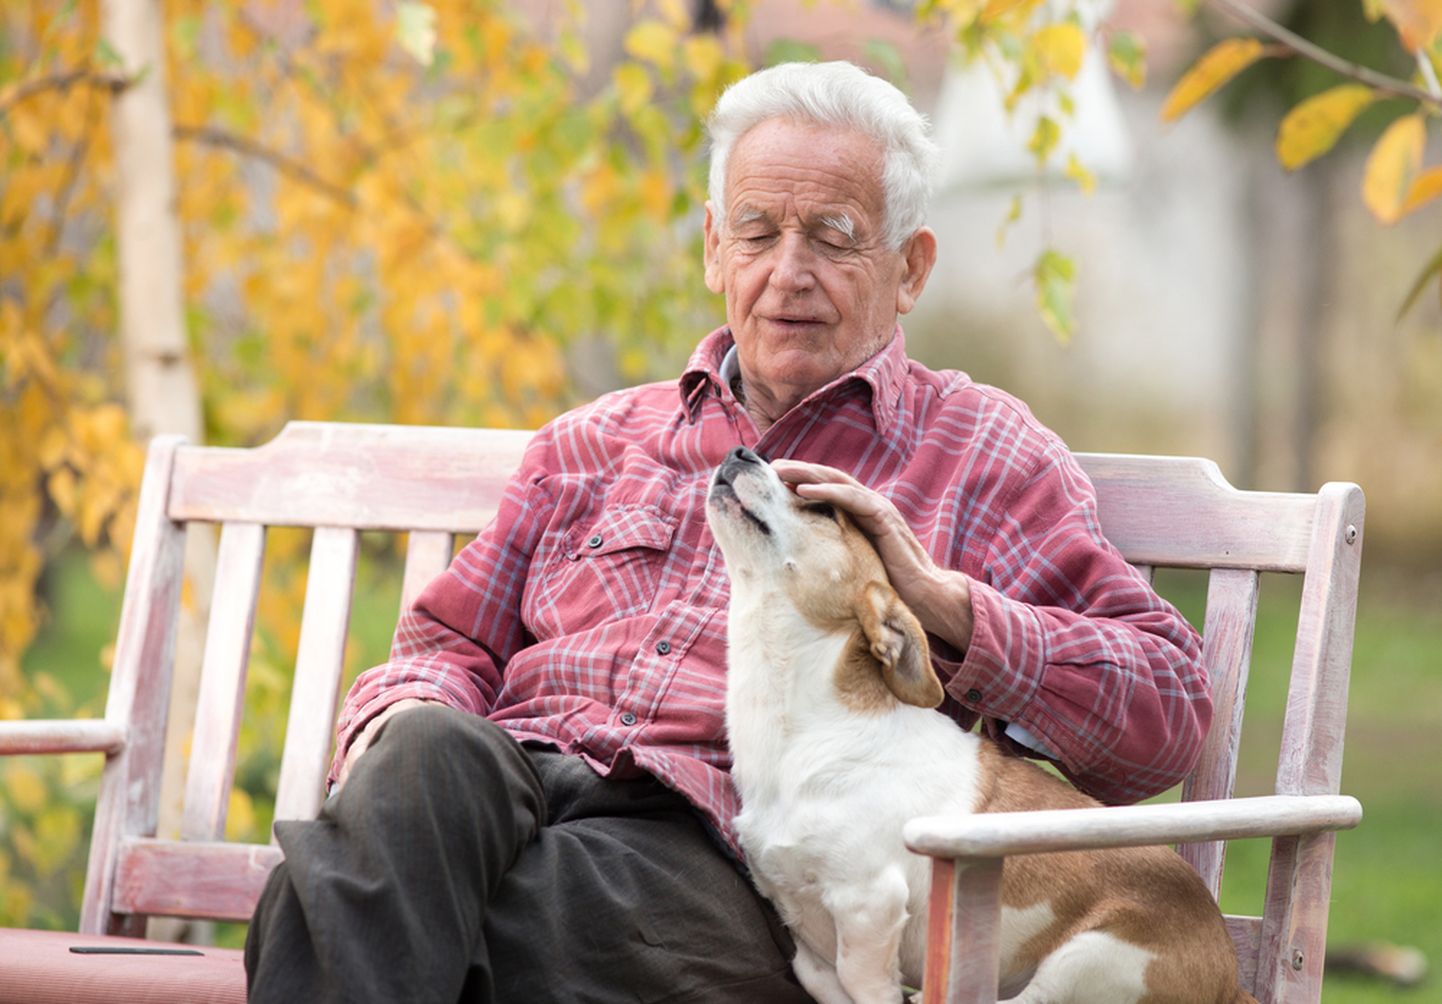 Пожилой мужчина с собакой. Иллюстративное фото.